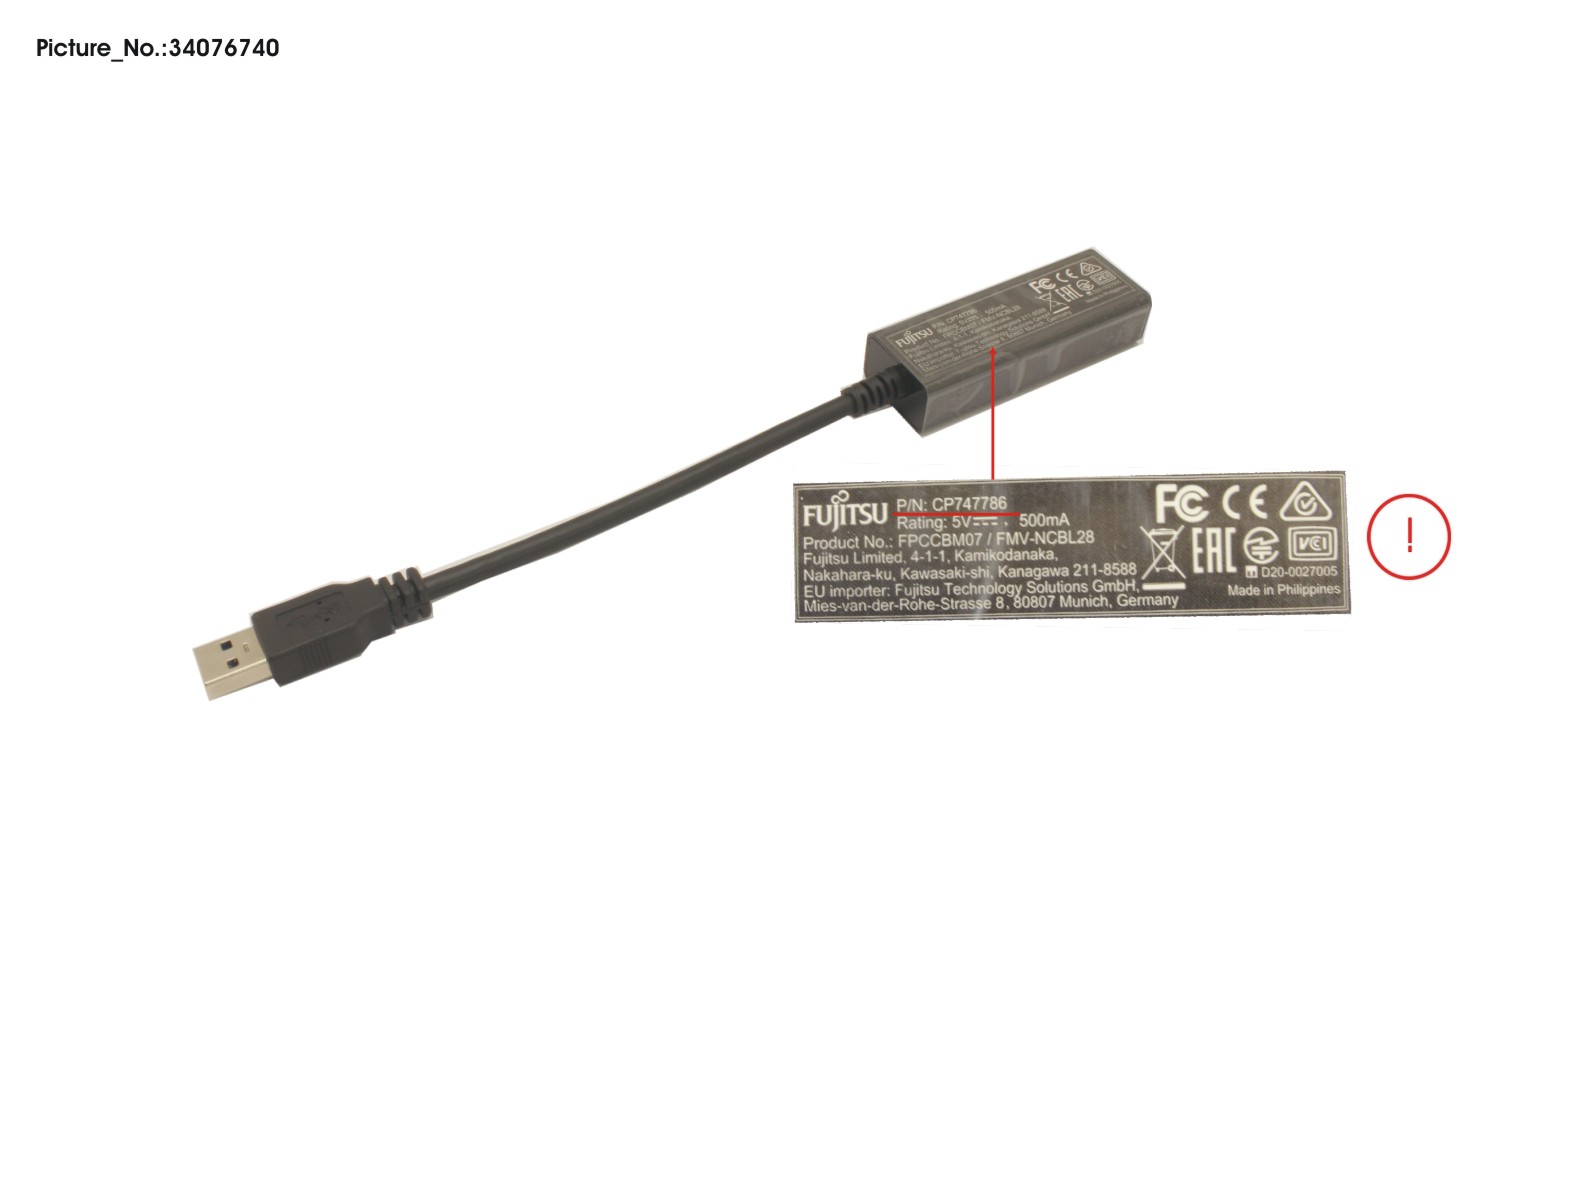 CABLE, LAN ADAPTER (USB TO LAN)